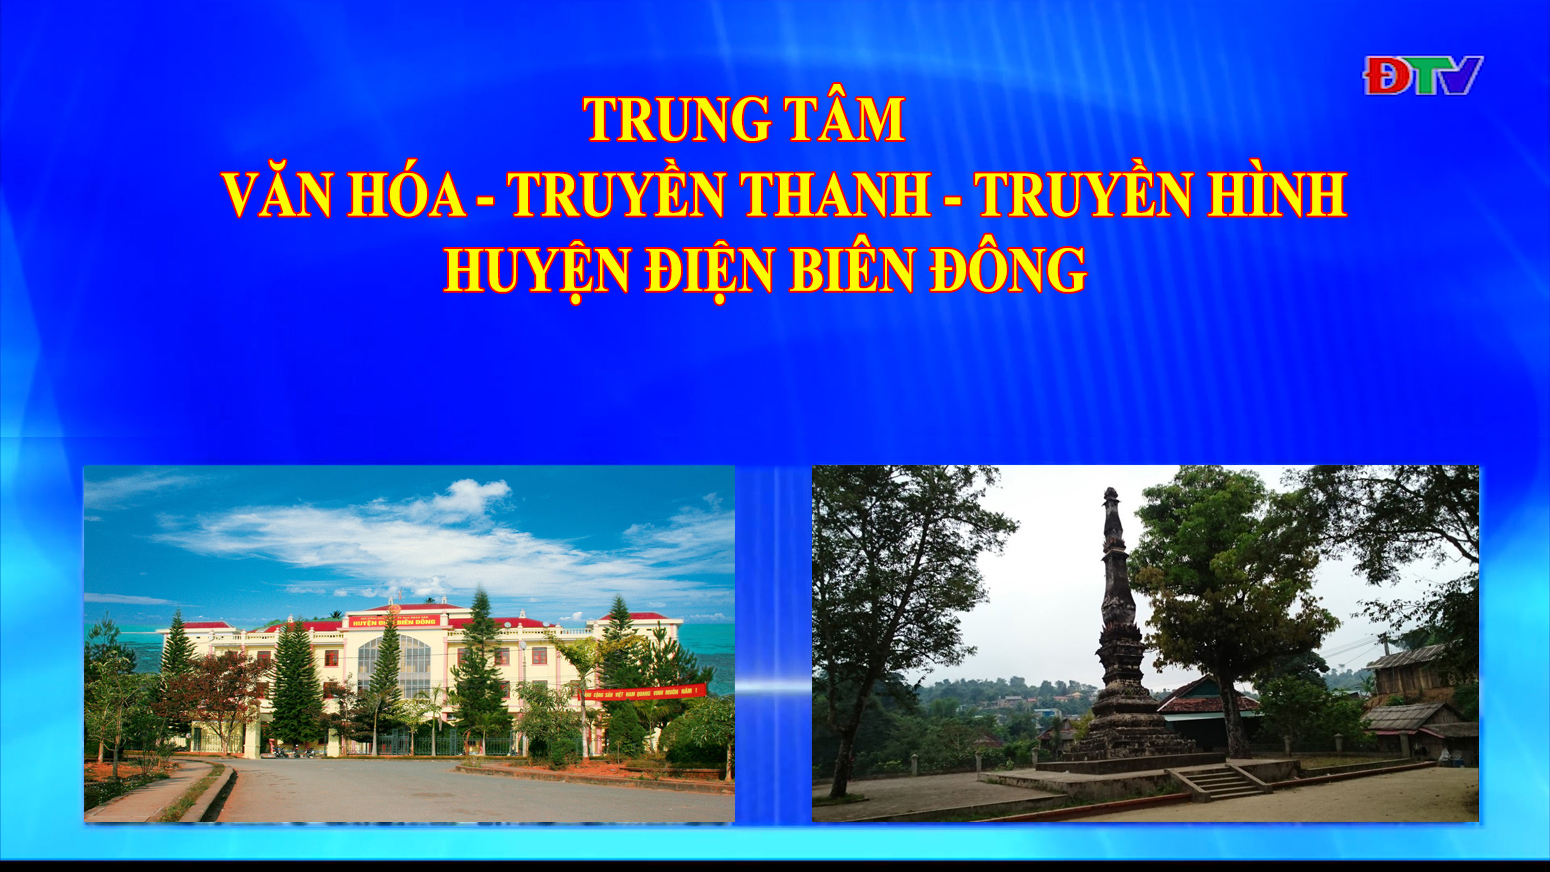 Trung tâm VH-TTTH huyện Điện Biên Đông (Ngày 18-12-2021)